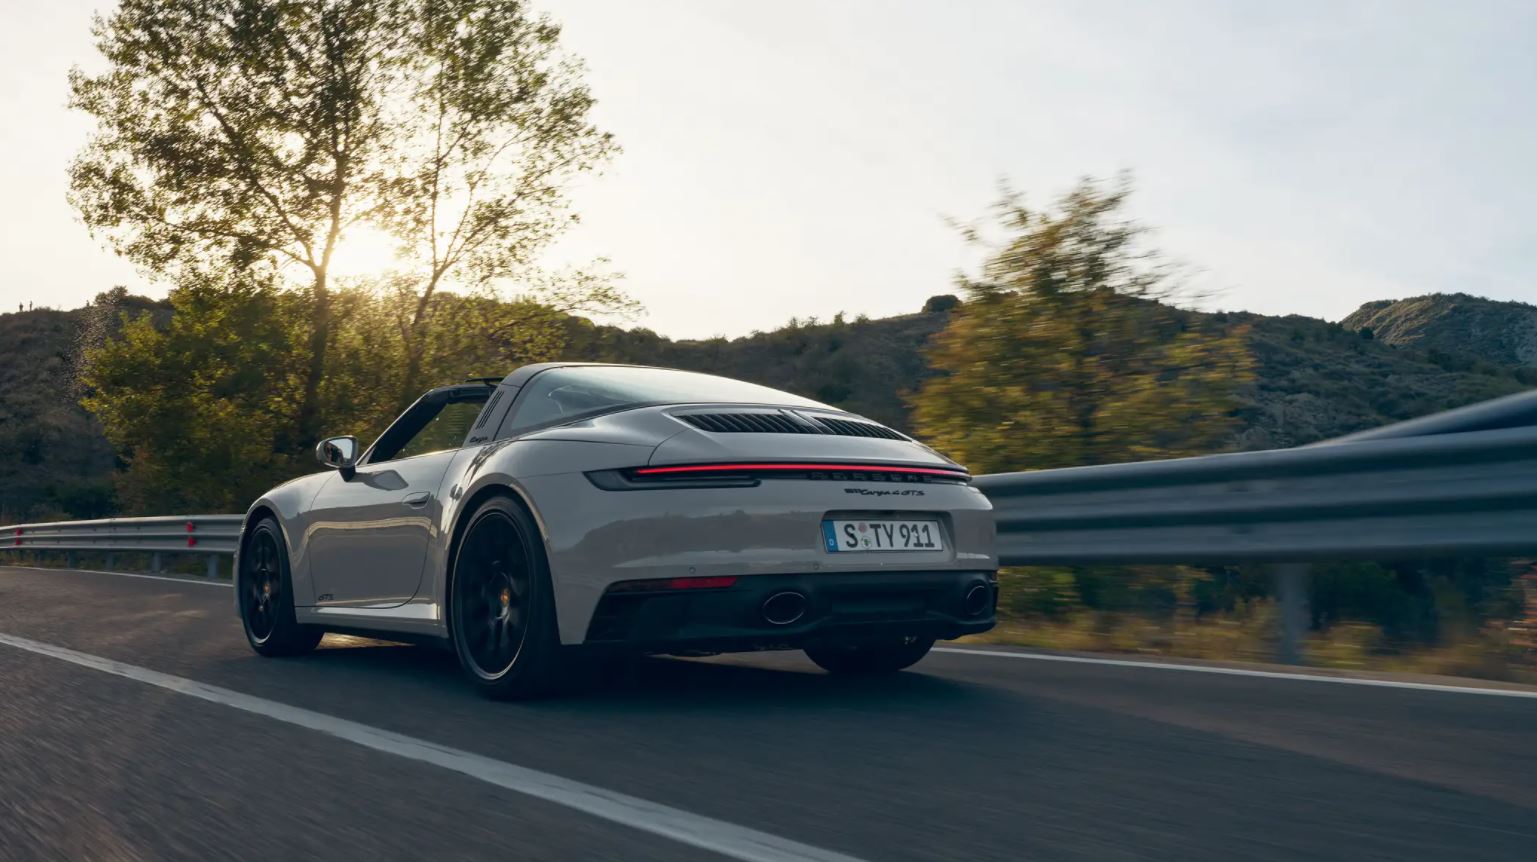 Meet the New 2022 Porsche 911 - Porsche West Broward Blog